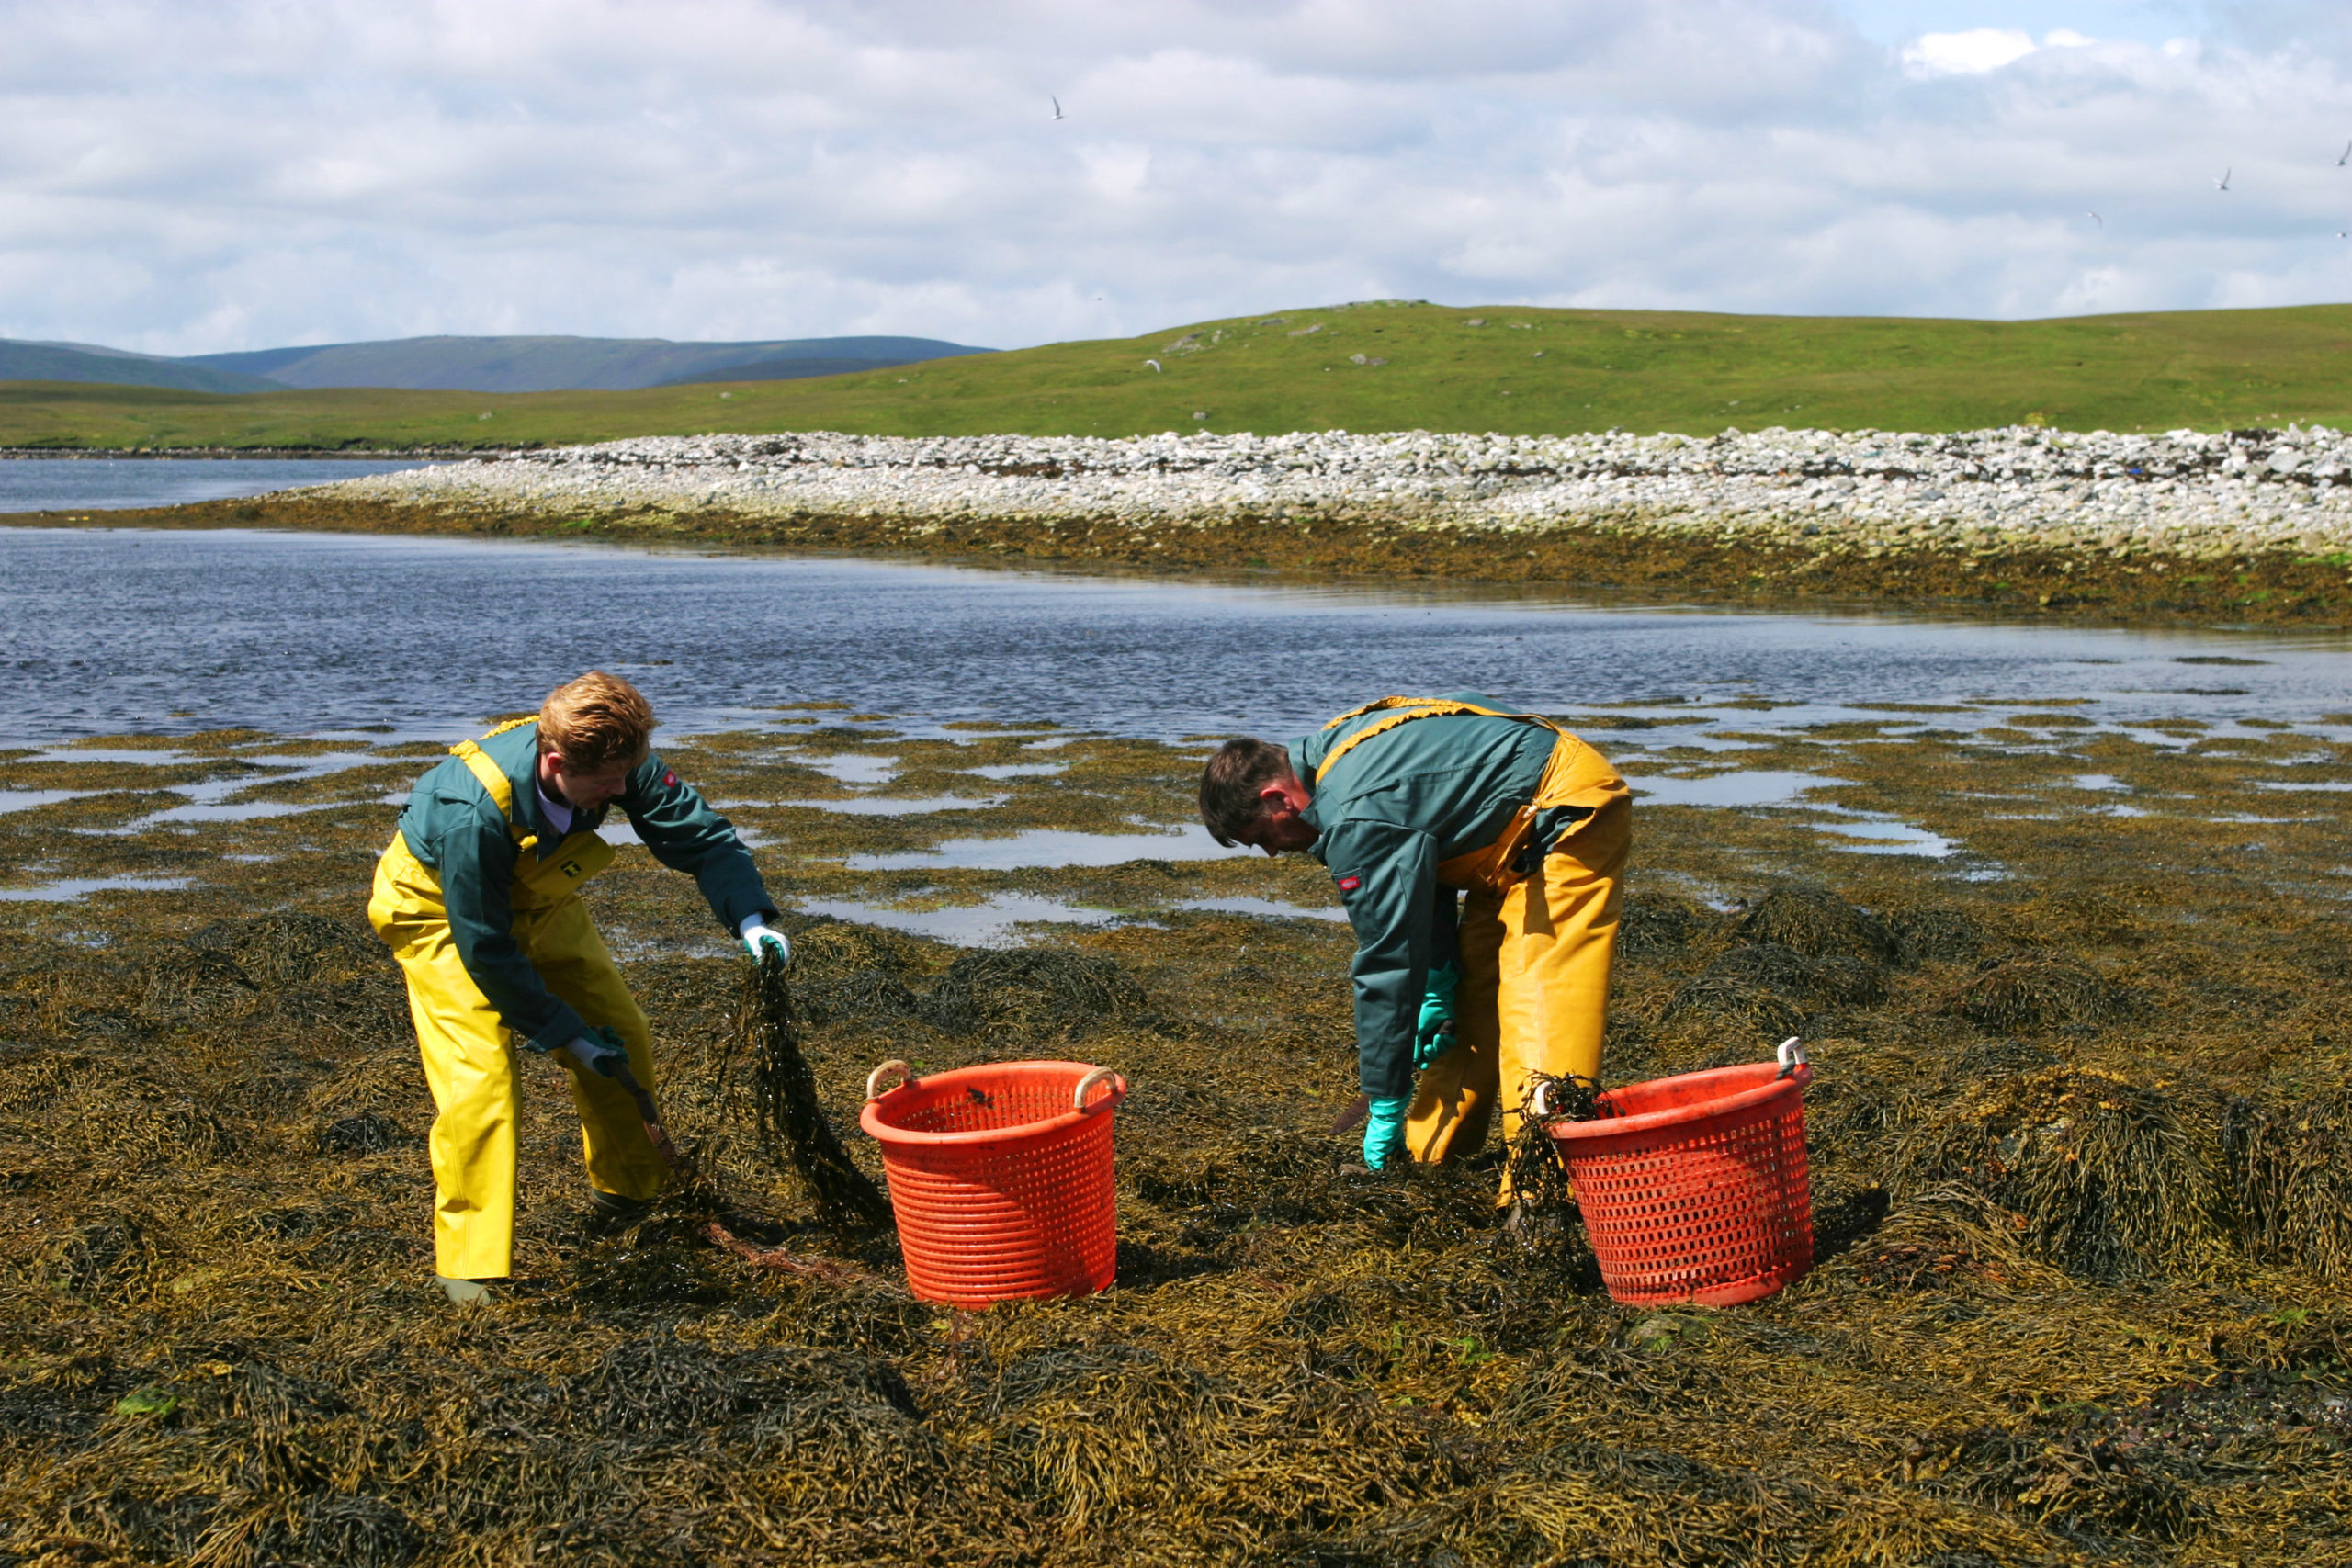 Harvesting Seaweed for fertiliser